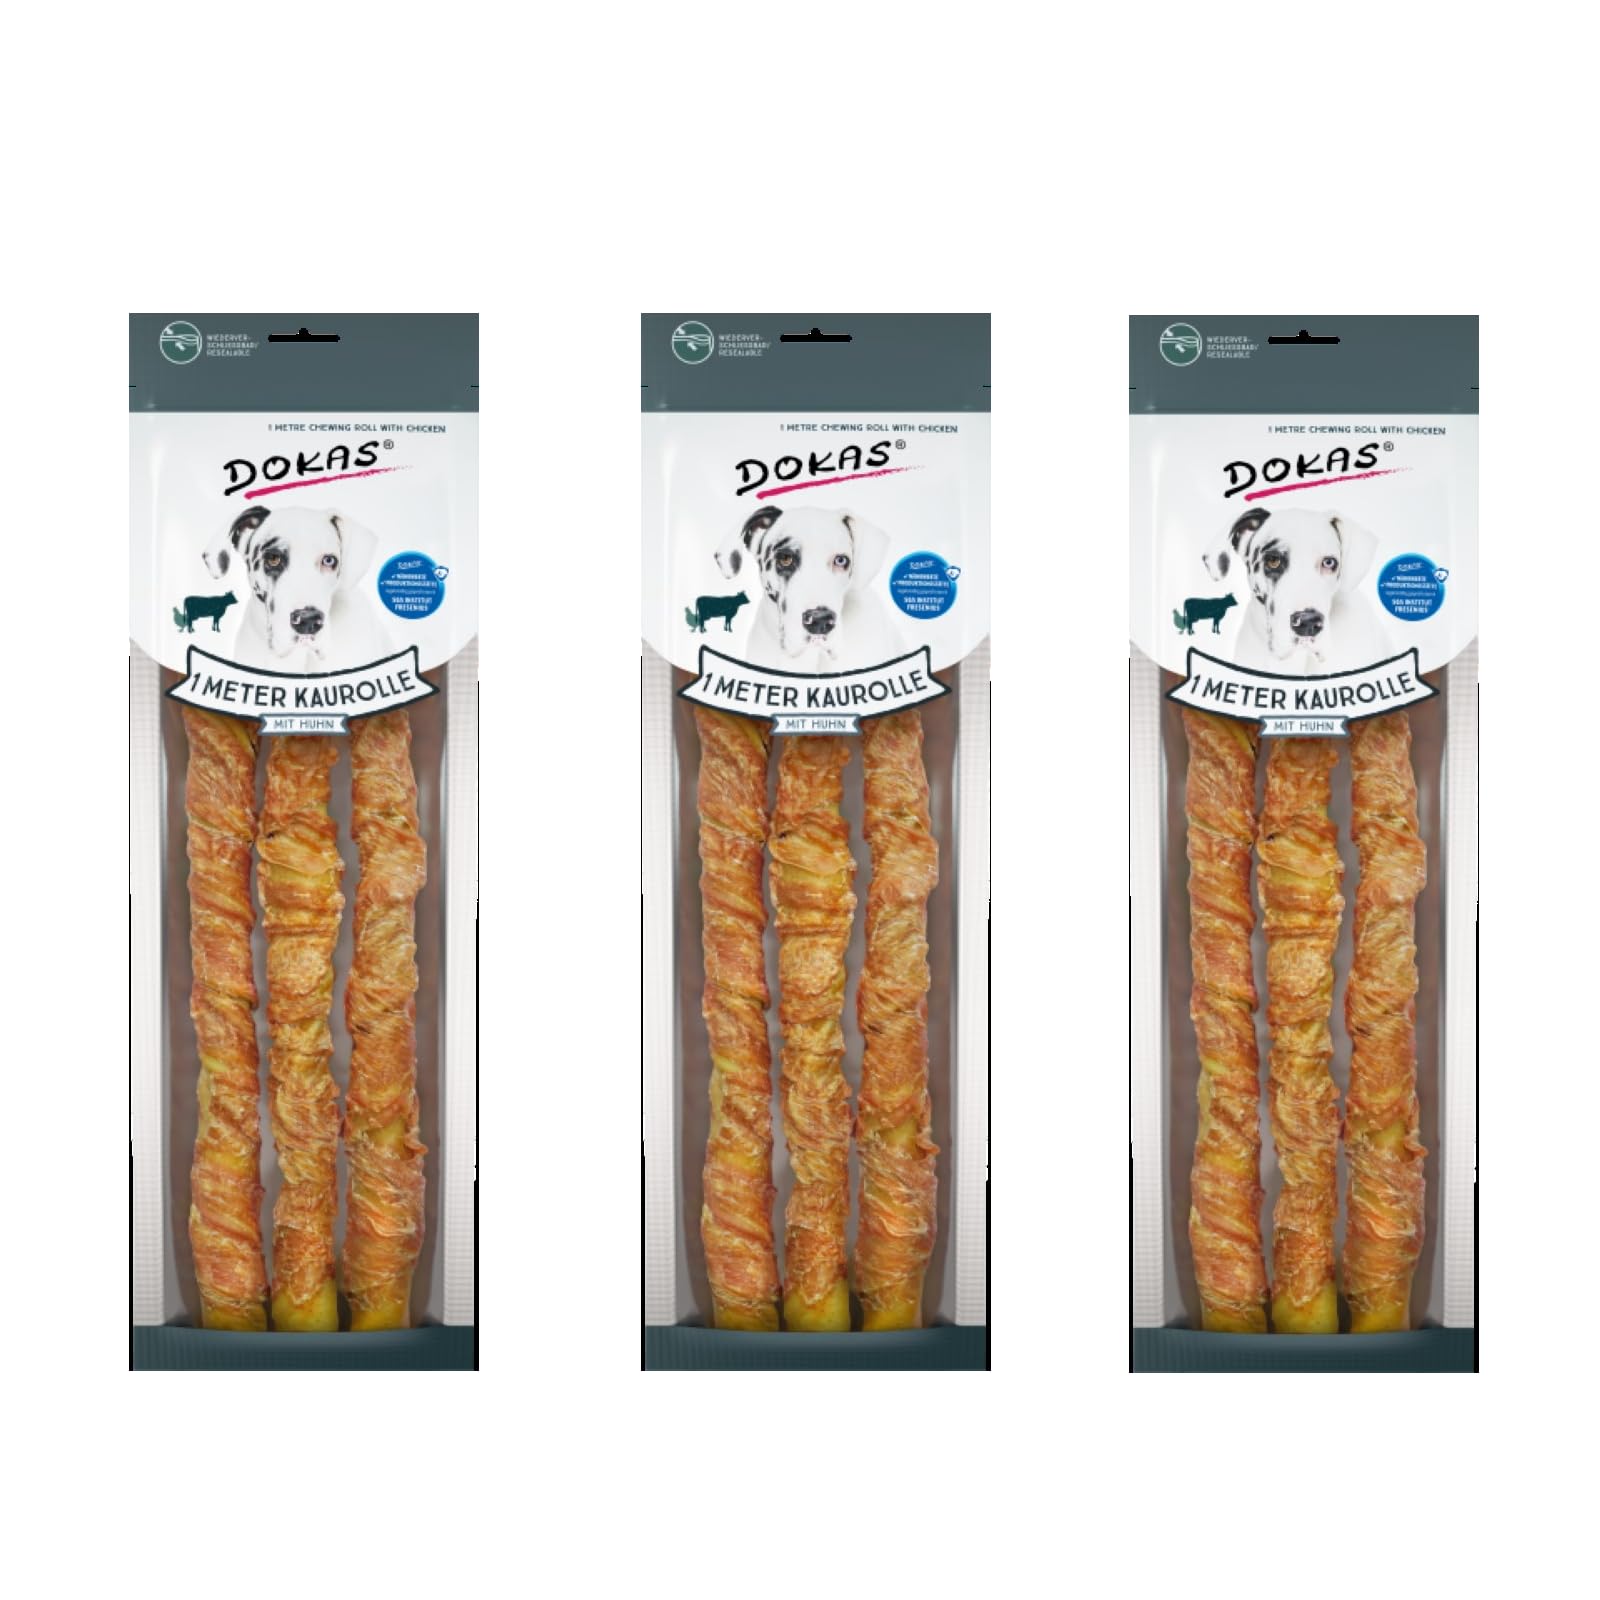 Dokas Dog 1 Meter Kaurolle mit Huhn | 3er Set | 3 x 315 g | Ergänzungsfuttermittel für Hunde | Langzeit-Knabber- und Kauvergnügen aus Rinderhaut mit Hühnerbrustfilet ummantelt